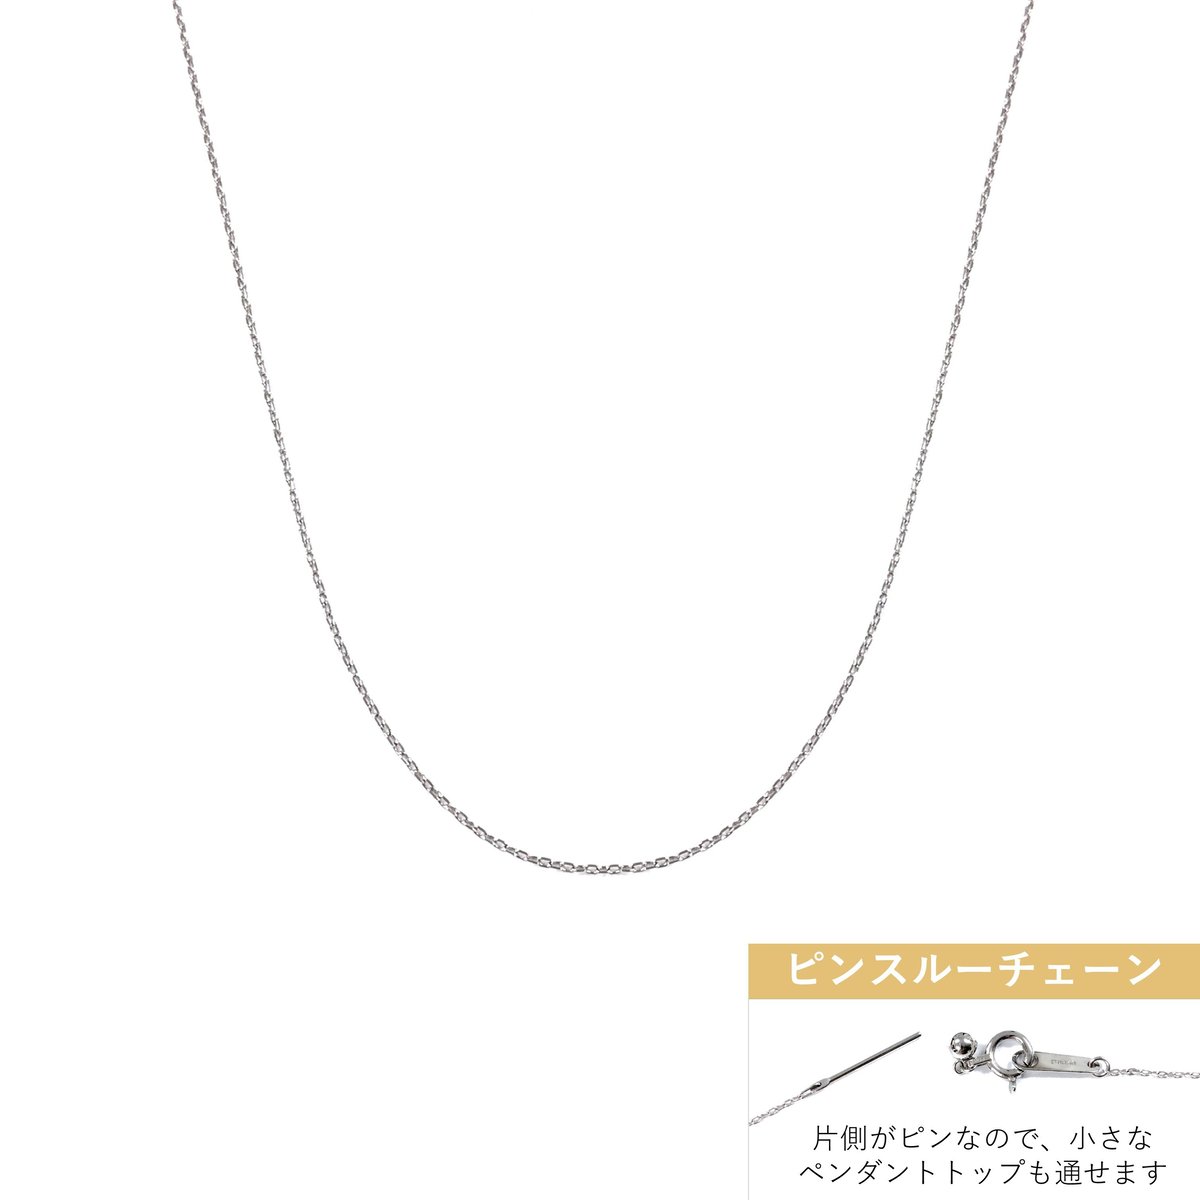 Pt850/950 一粒☆ダイヤ☆カットアズキ スライドピン ネックレス